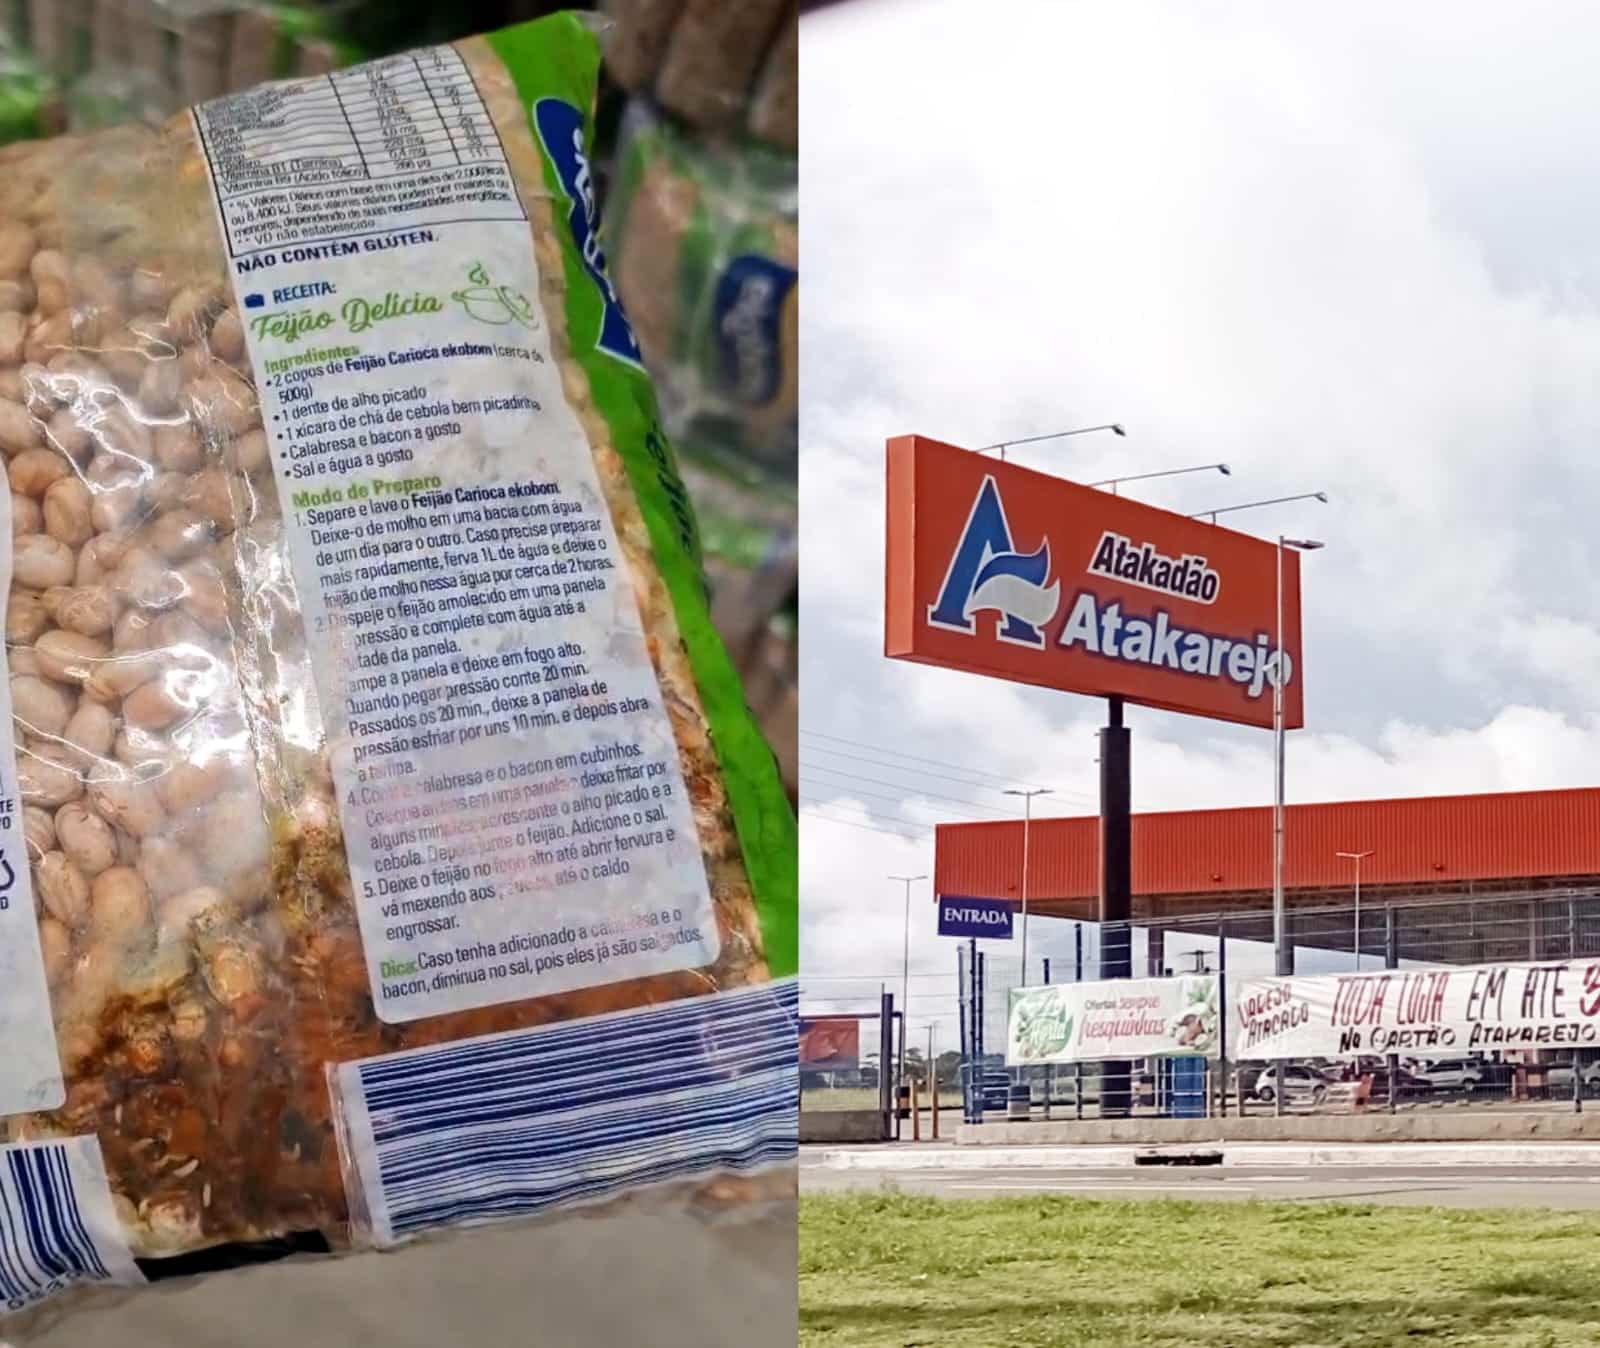 Camaçari: feijão estragado é vendido nas prateleiras do Atakarejo